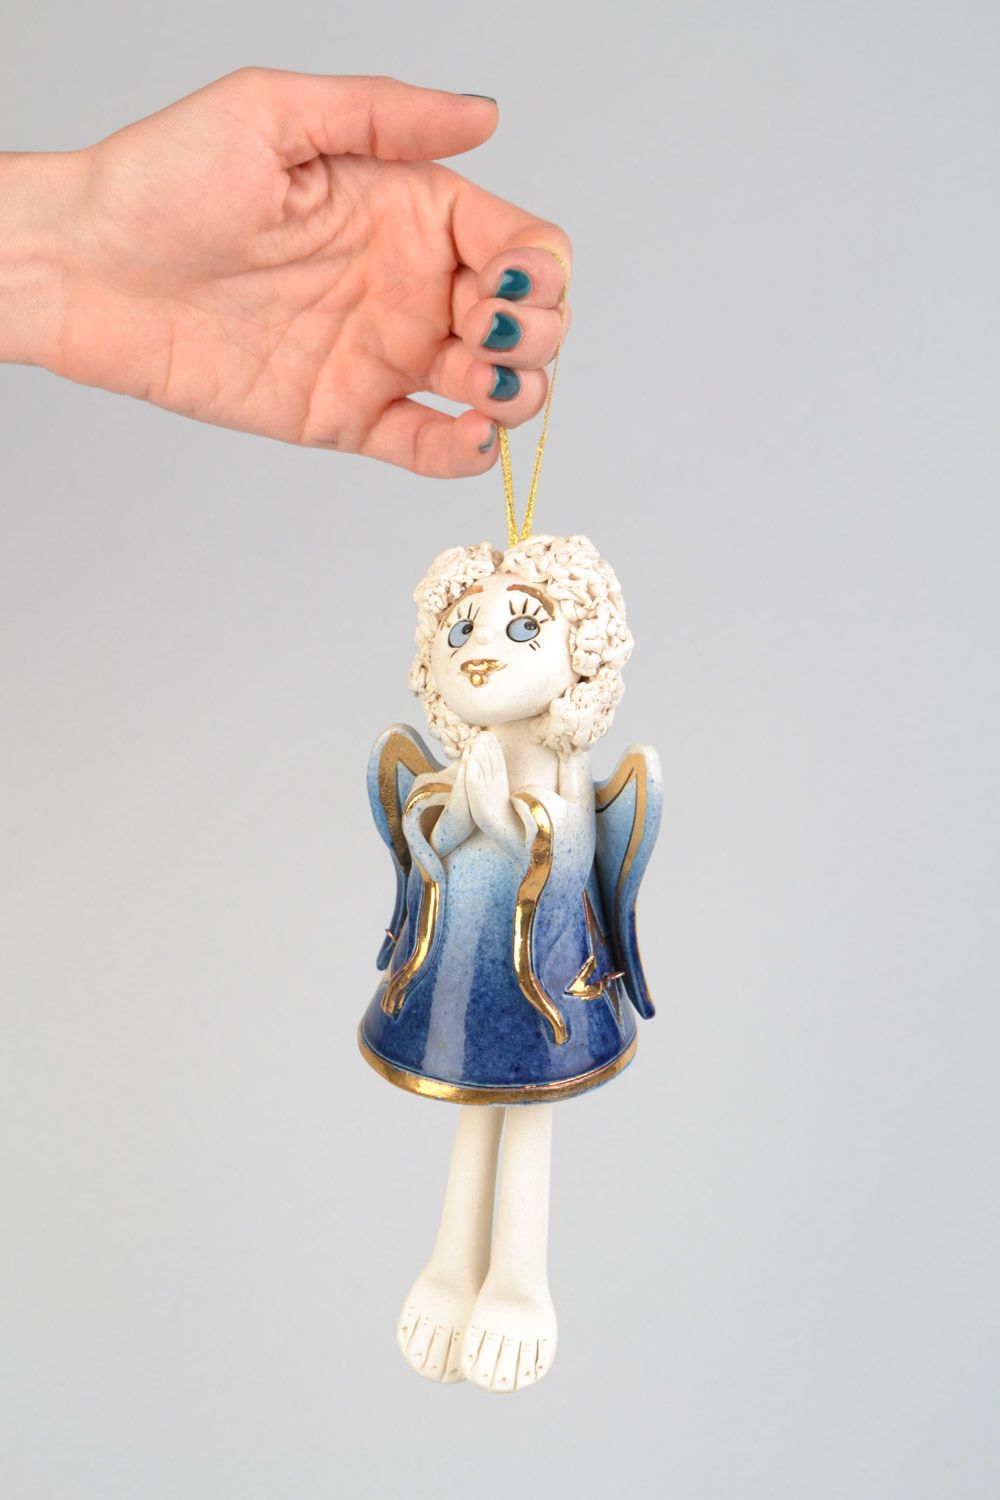 Глиняный колокольчик в виде ангела расписанного цветной глазурью ручной работы фото 1